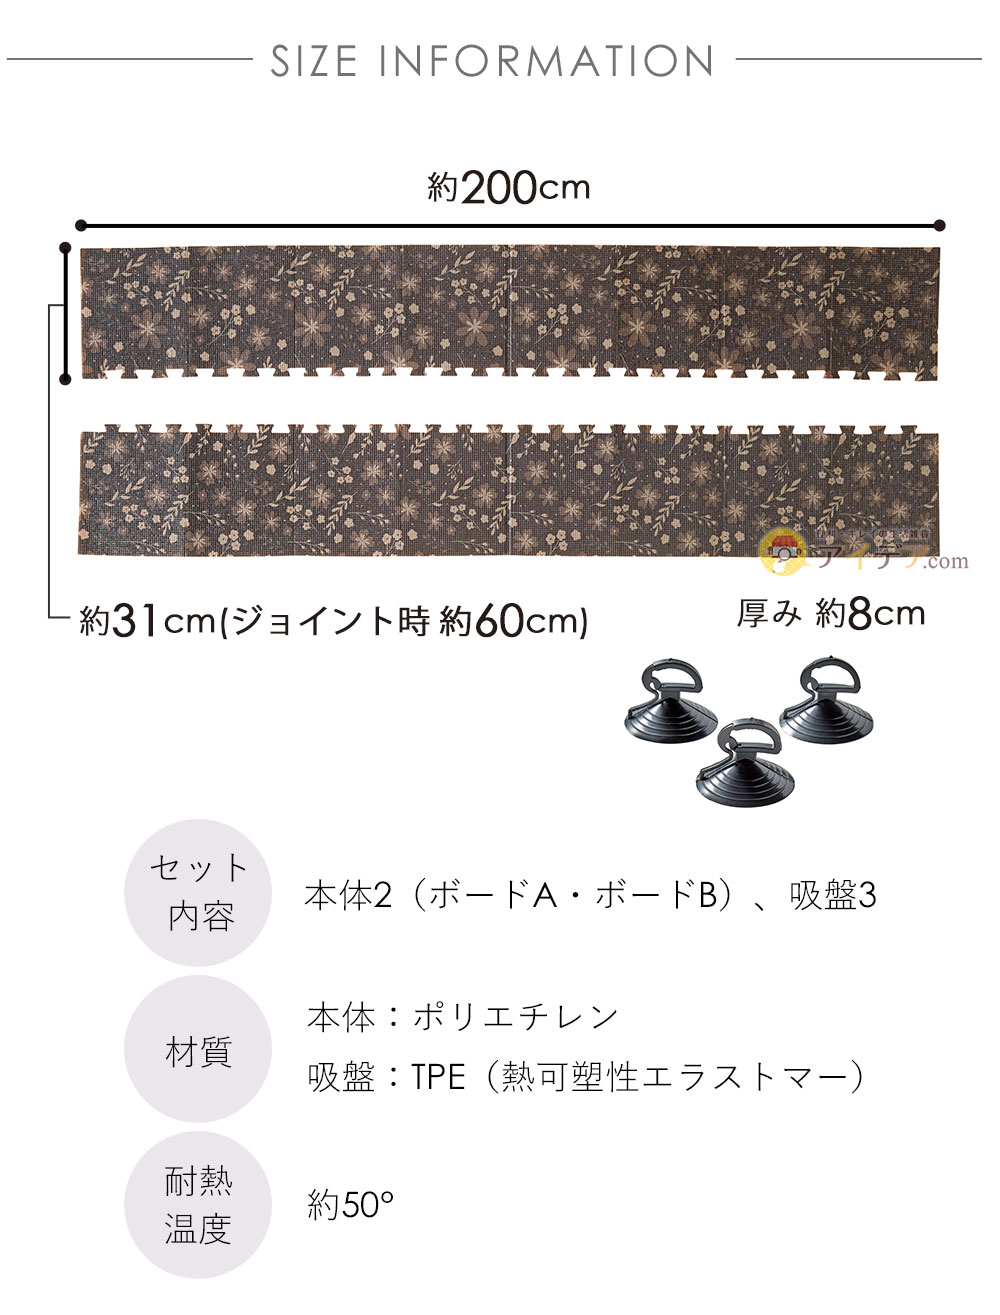 製品サイズ 1枚あたり：31×200cm（ジョイント部含む）、ジョイント時：60×200cm